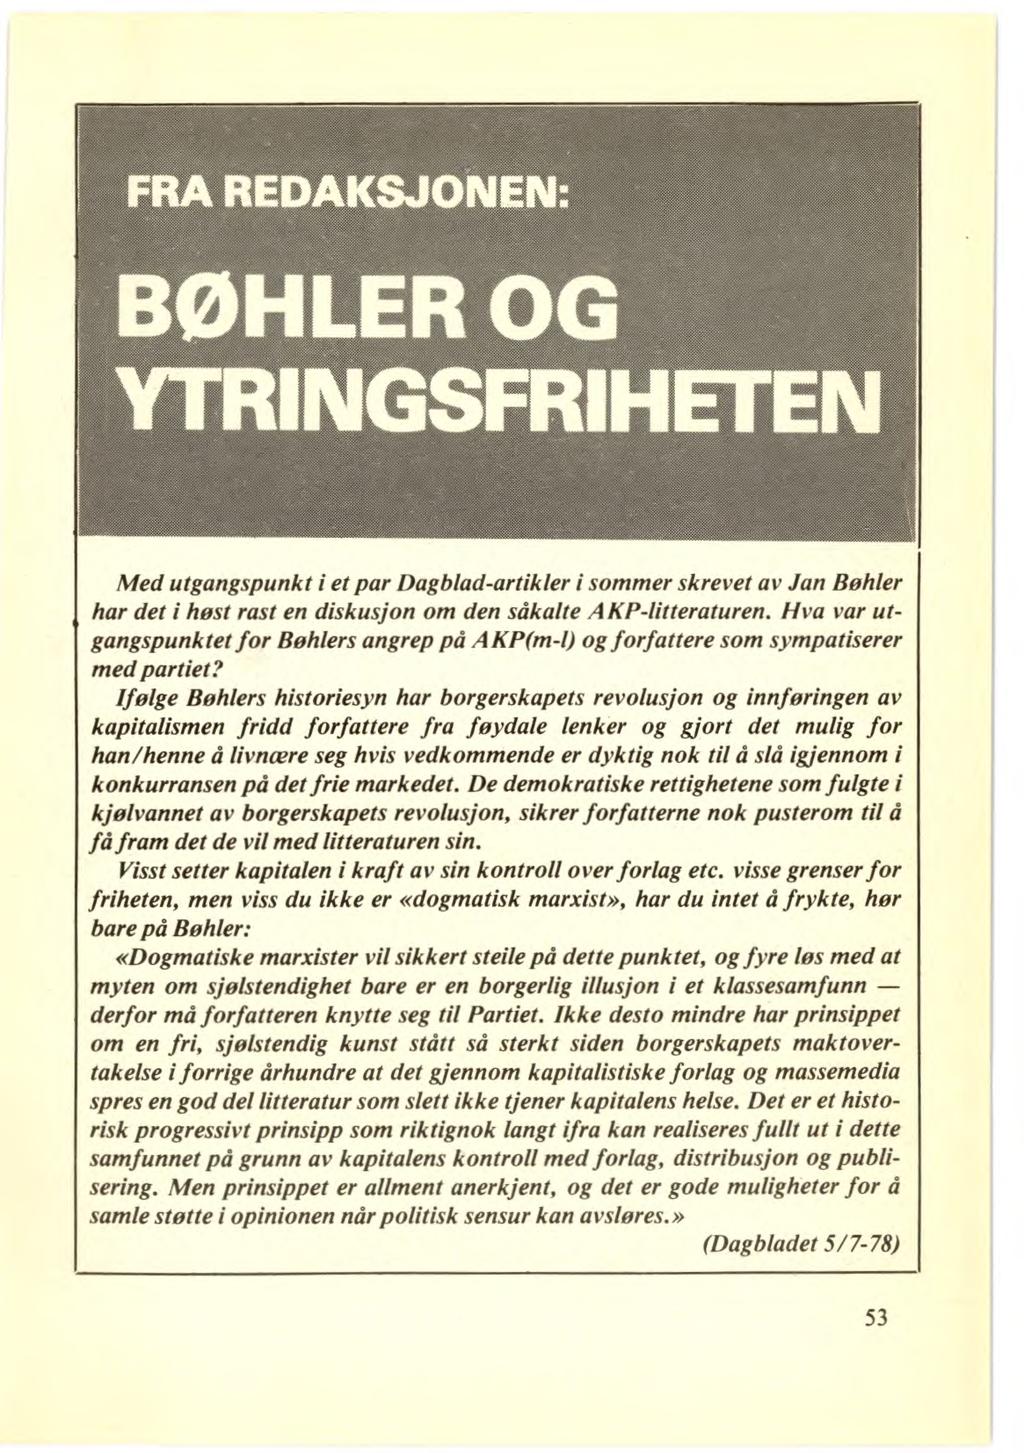 Med utgangspunkt i et par Dagblad-artikler i sommer skrevet av Jan Bøhler har det i høst rast en diskusjon om den såkalte AKP-litteraturen.